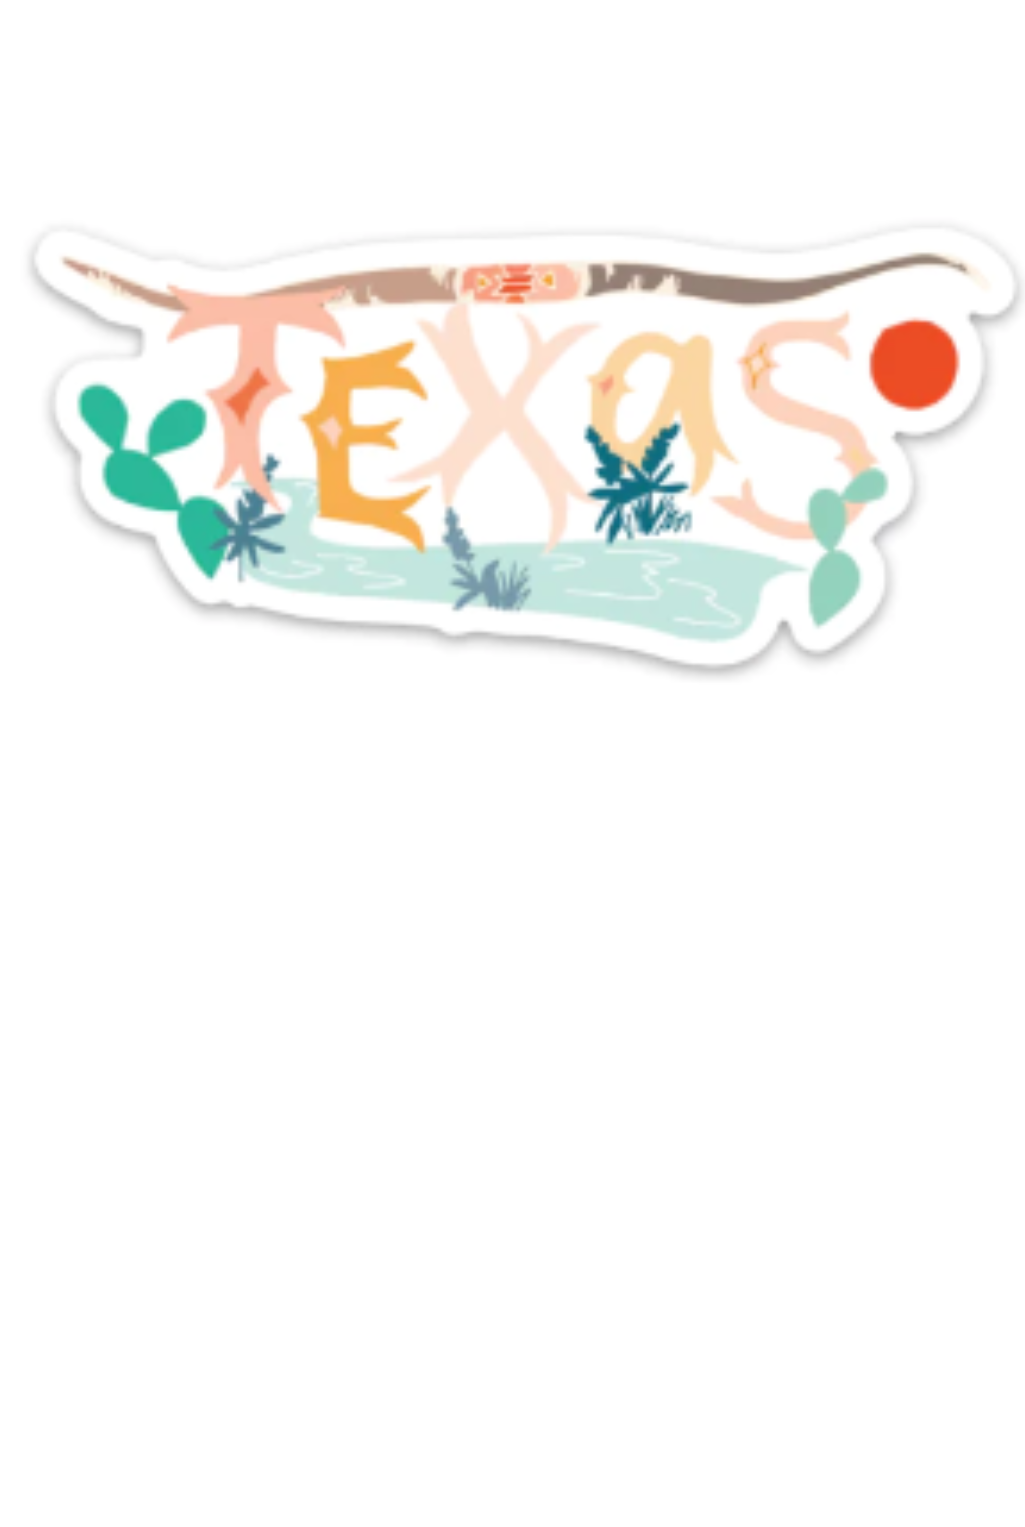 Texas Longhorn Sticker